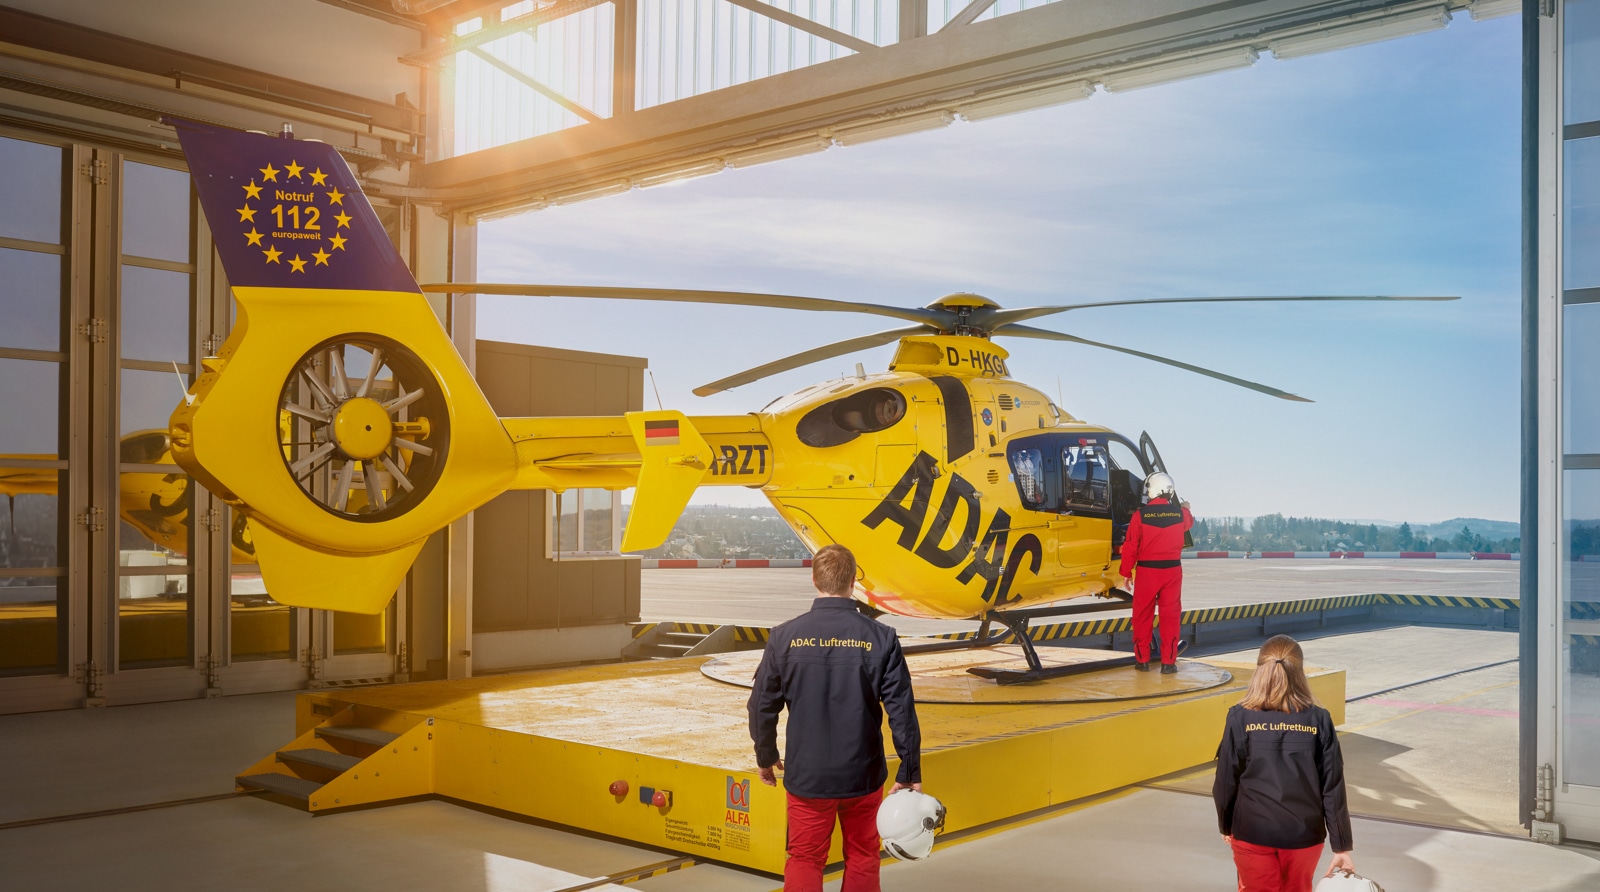 ADAC Hubschrauber in der Garage, zwei Piloten steigen ein für die ADAC Kommunikationskampagne